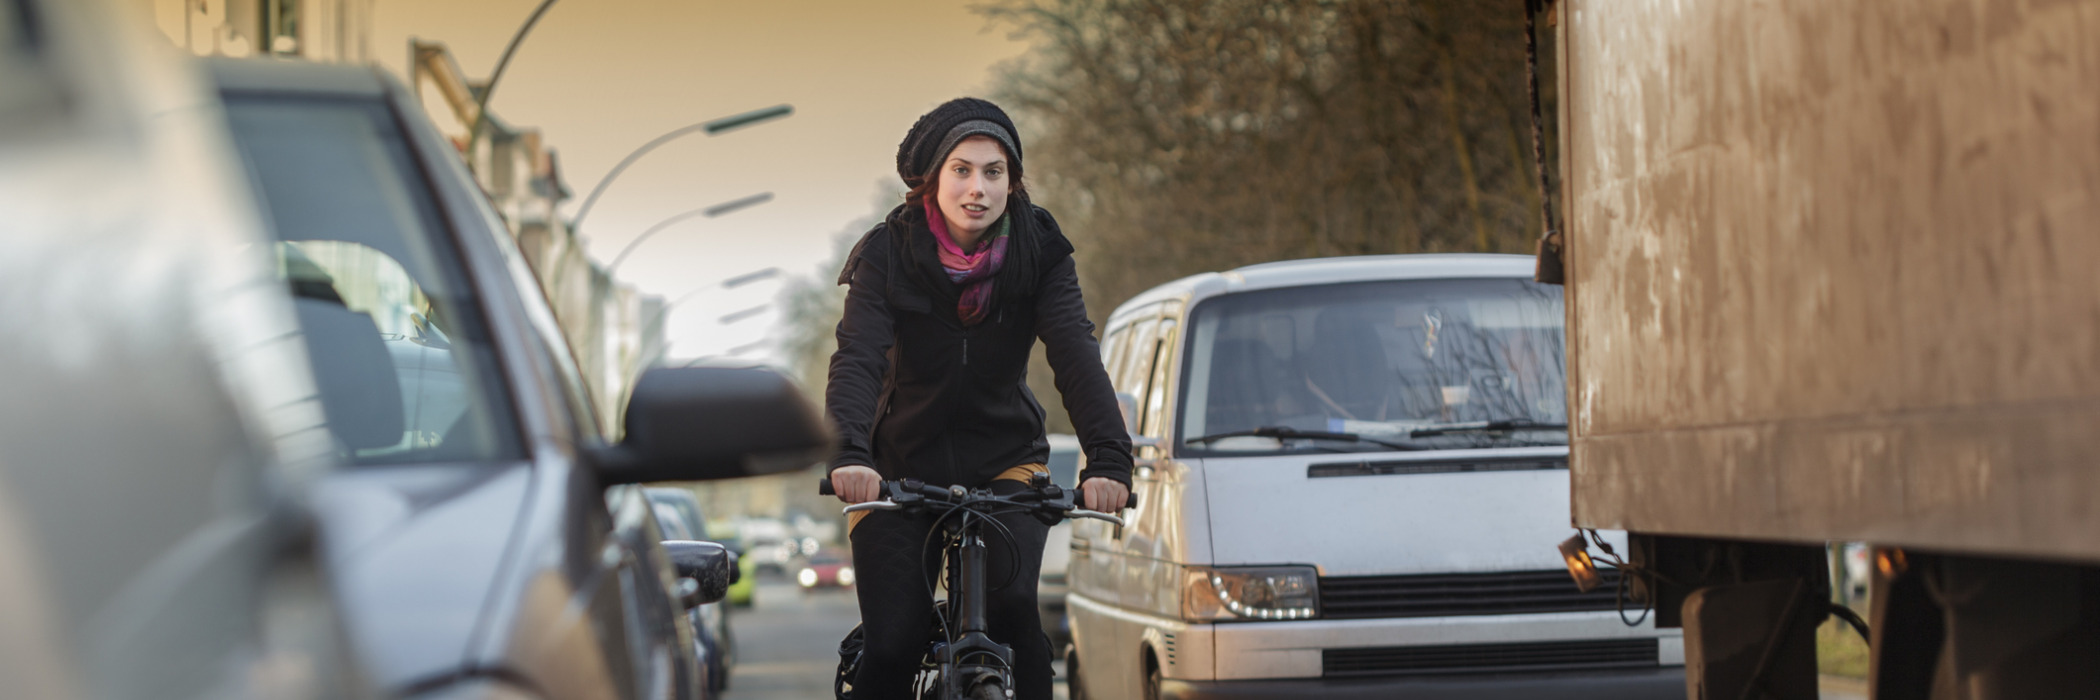 Wie gefährlich ist die Luftverschmutzung für meine Gesundheit? Das fragen sich viele Radfahrerinnen und Radfahrer in deutschen Städten.